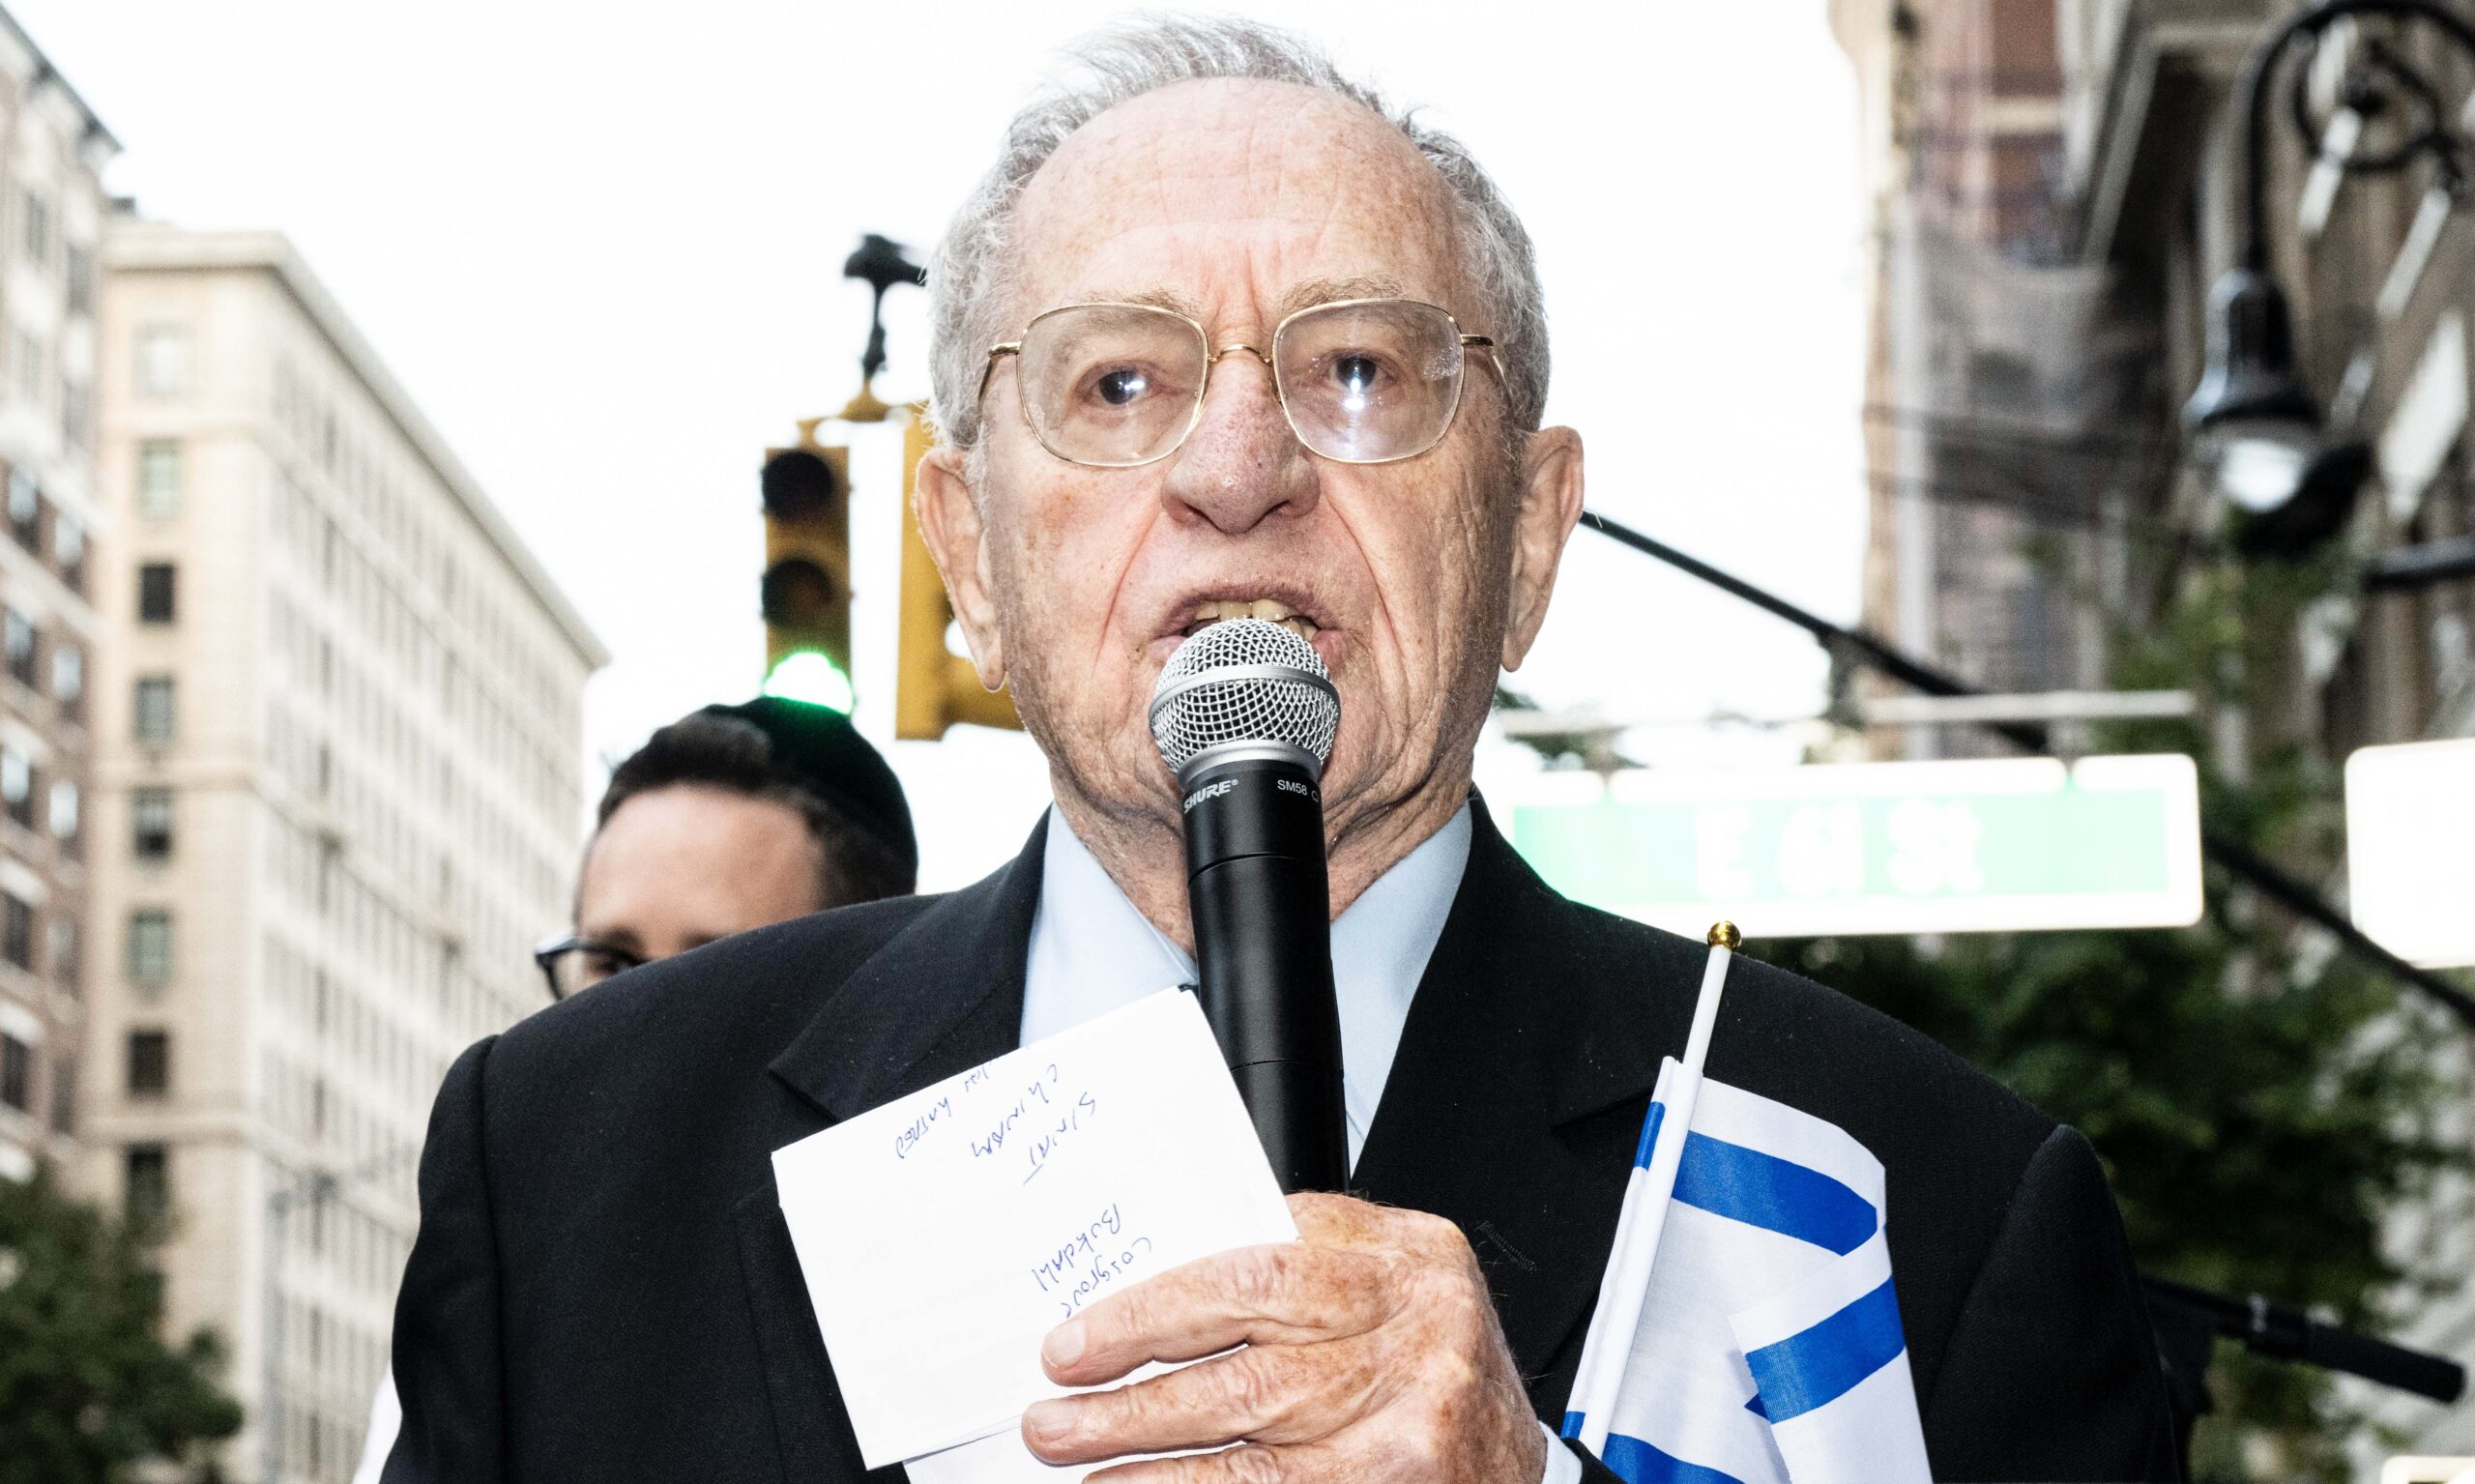 Alan Dershowitz, el abogado pro sionista que aparece en los “Epstein Docs”, se defiende cargando contra el “Me Too”